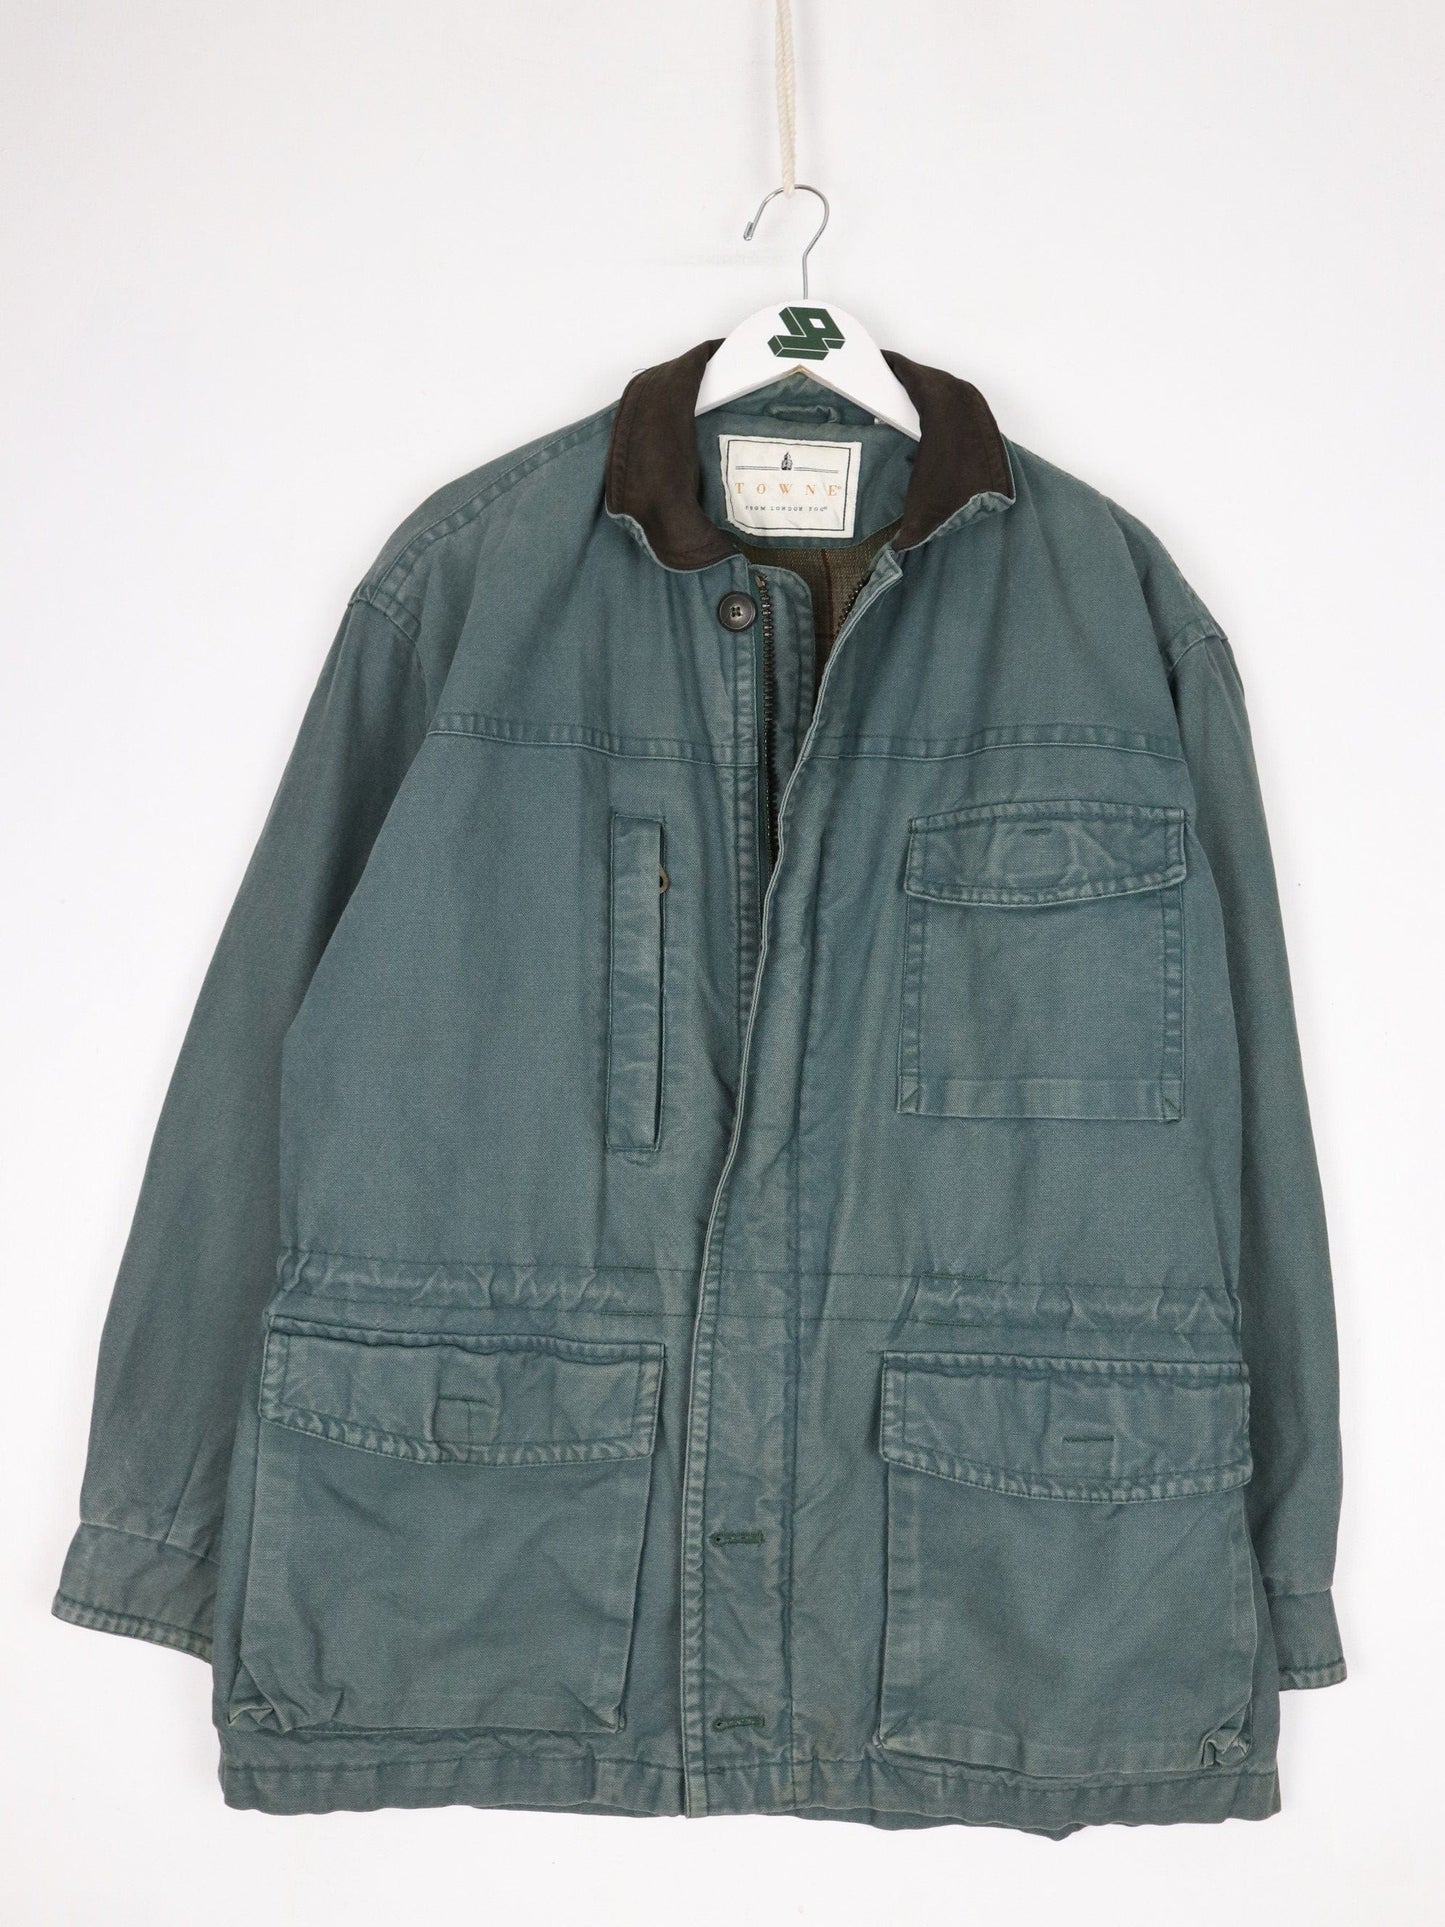 Other Jackets & Coats Vintage Towne London Fog Jacket Mens XL Green Chore Coat